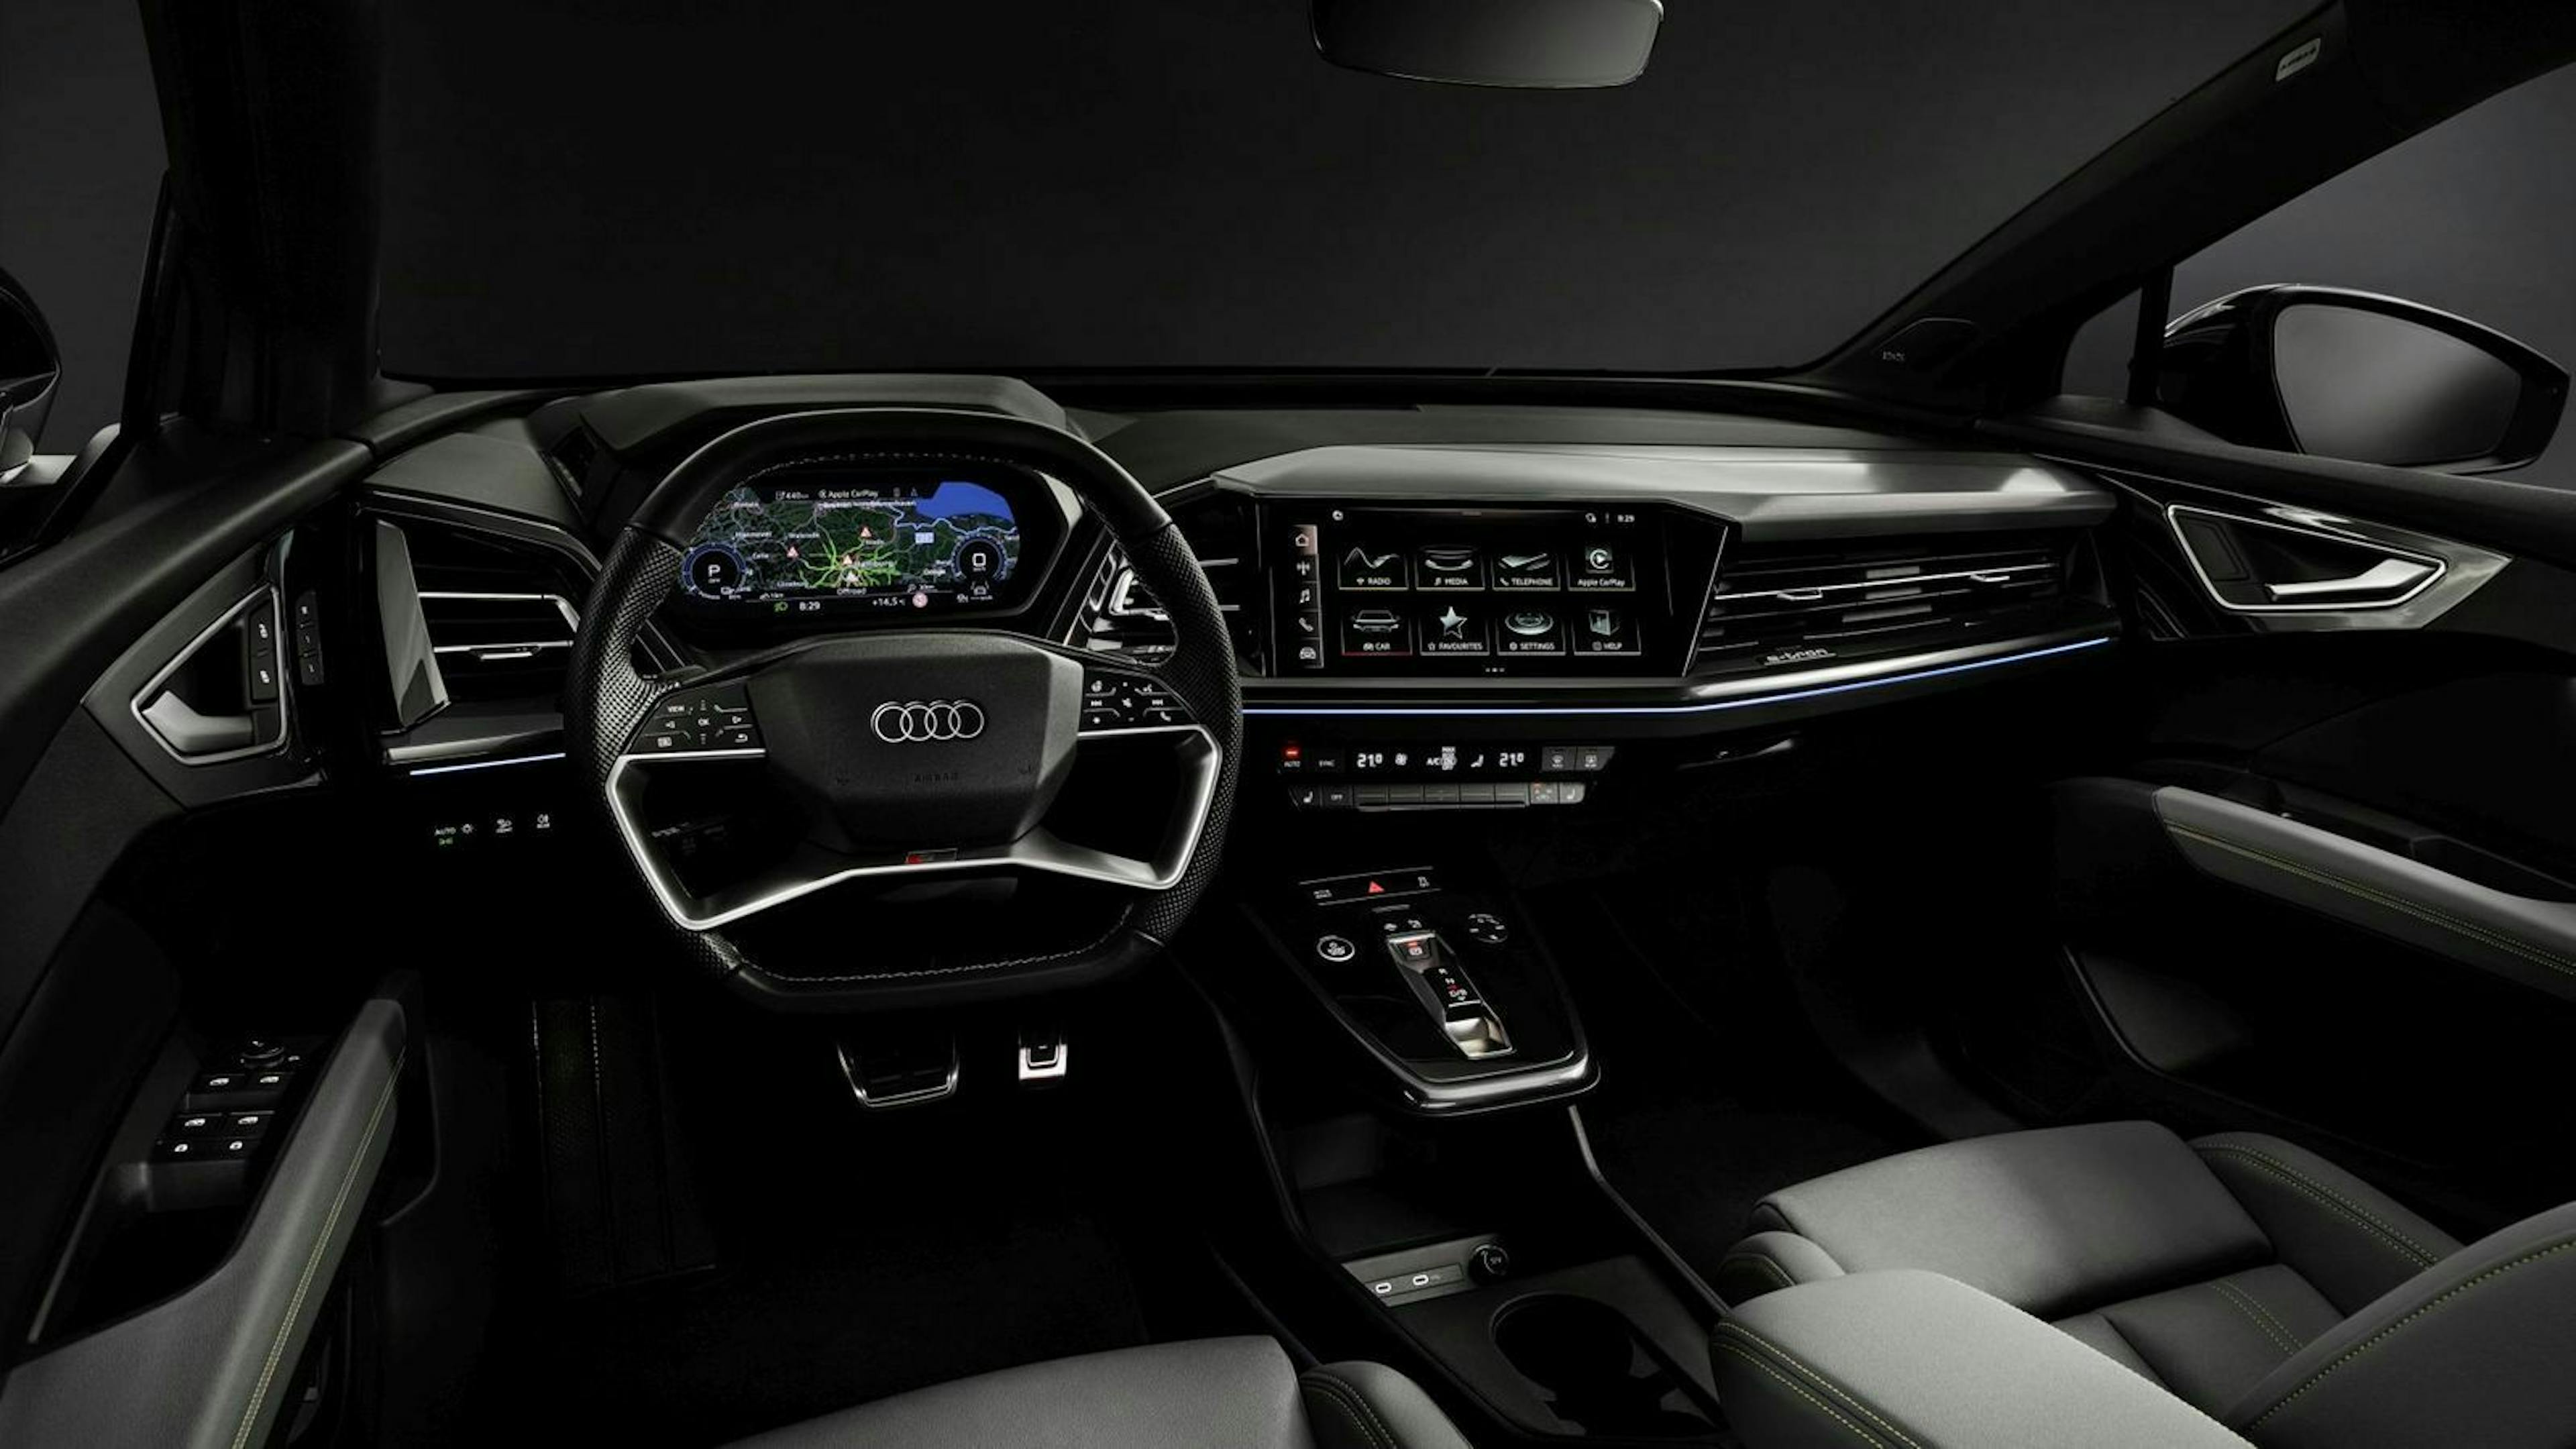 Zu sehen ist das Cockpit des neuen Audi Q4 E-Tron